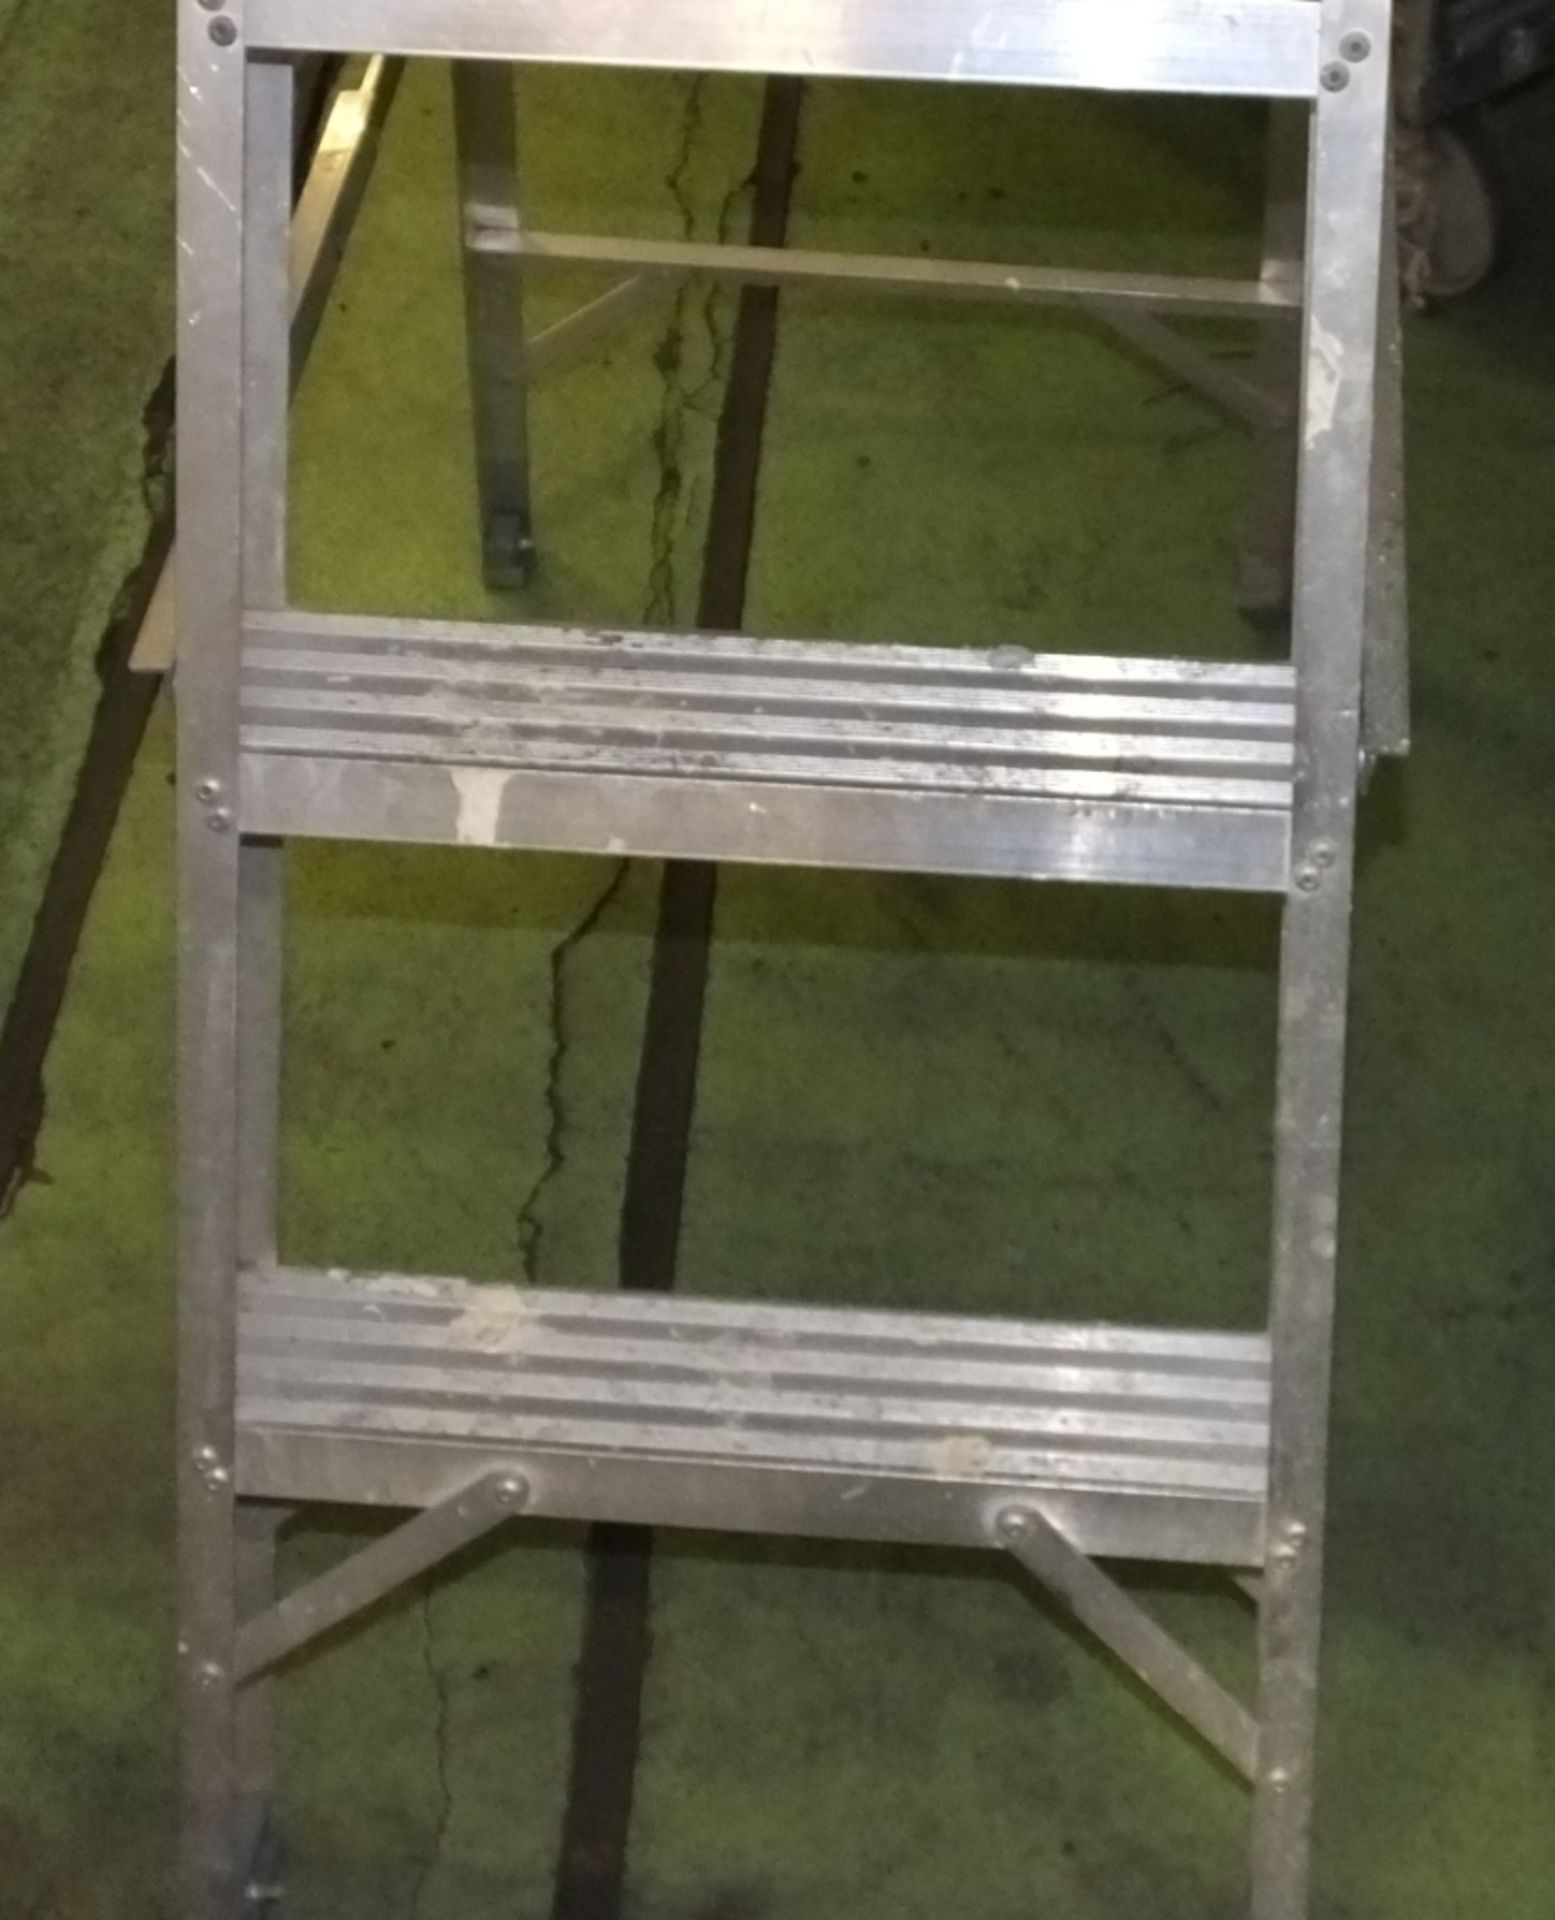 3 step & platform ladders - Image 2 of 2